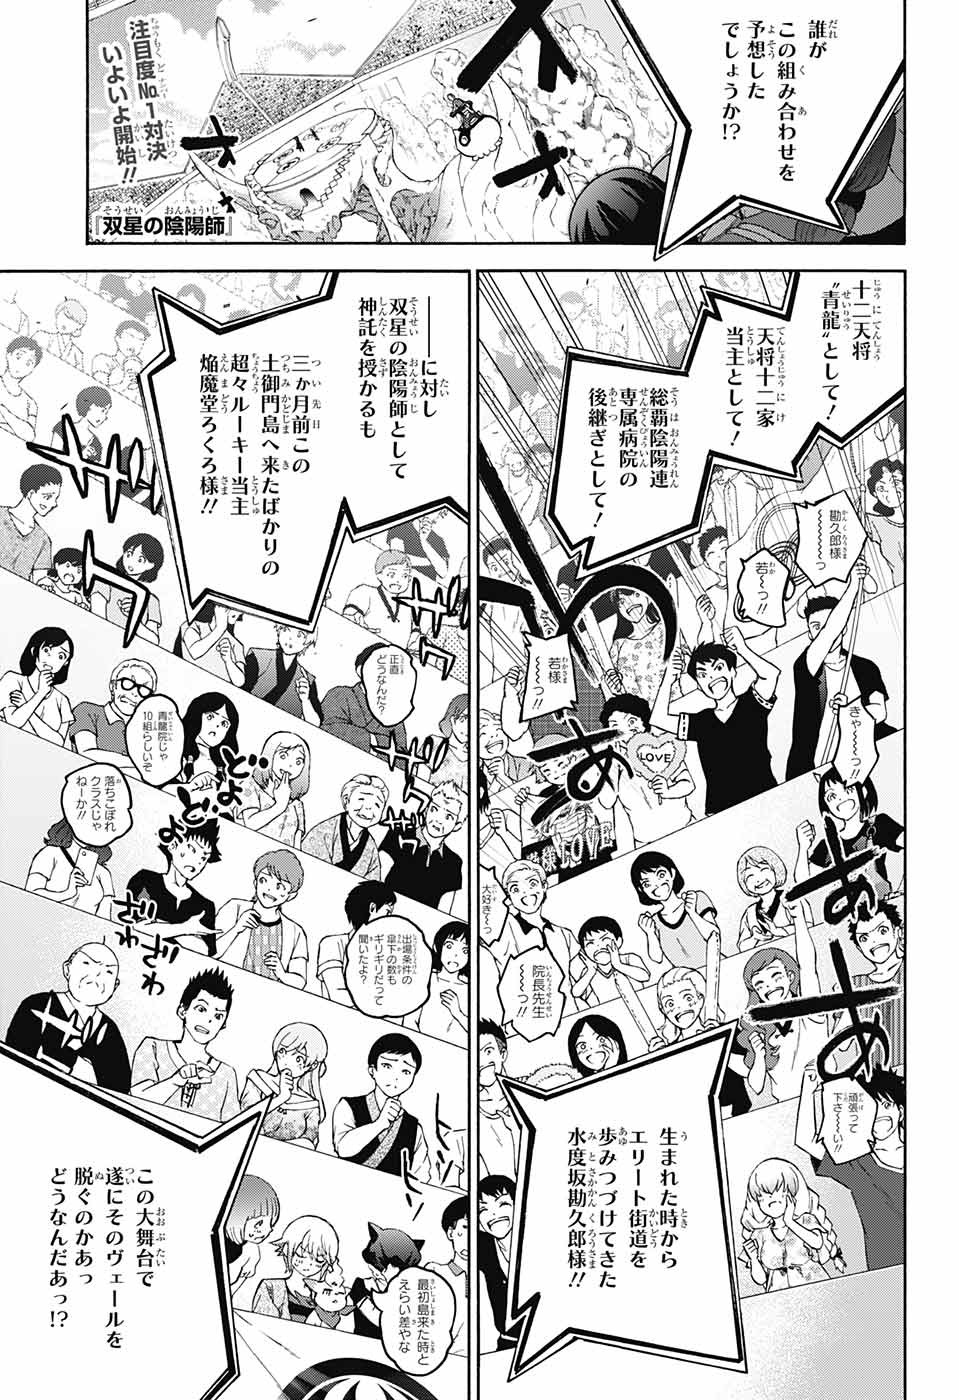 Sousei no Onmyouji - Chapter 44 - Page 1